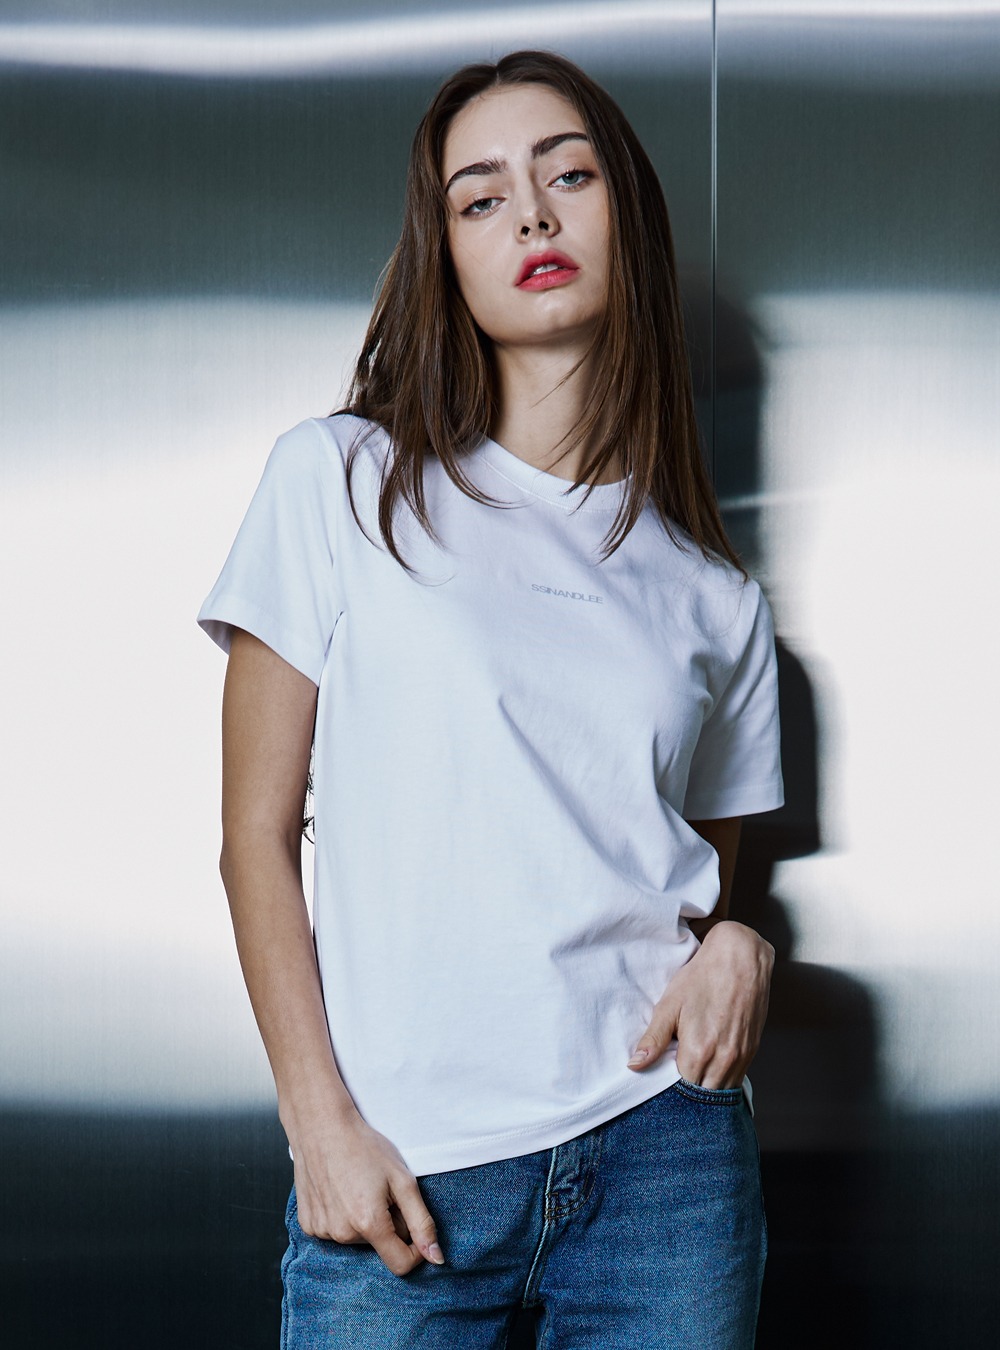 신앤리 모노그램 티셔츠 우먼 화이트(세미 슬림)  SSINANDLEE MONOGRAM T - SHIRT FOR WOMAN WHITE